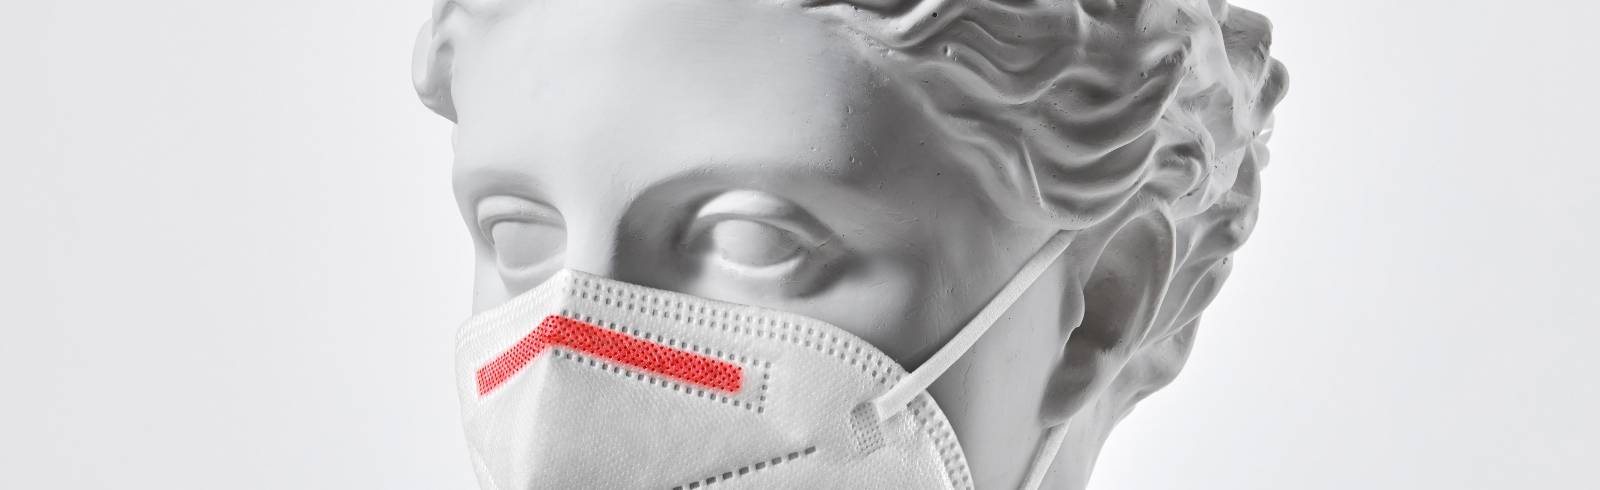 Razzia: Verdacht auf umetikettierte FFP2-Masken